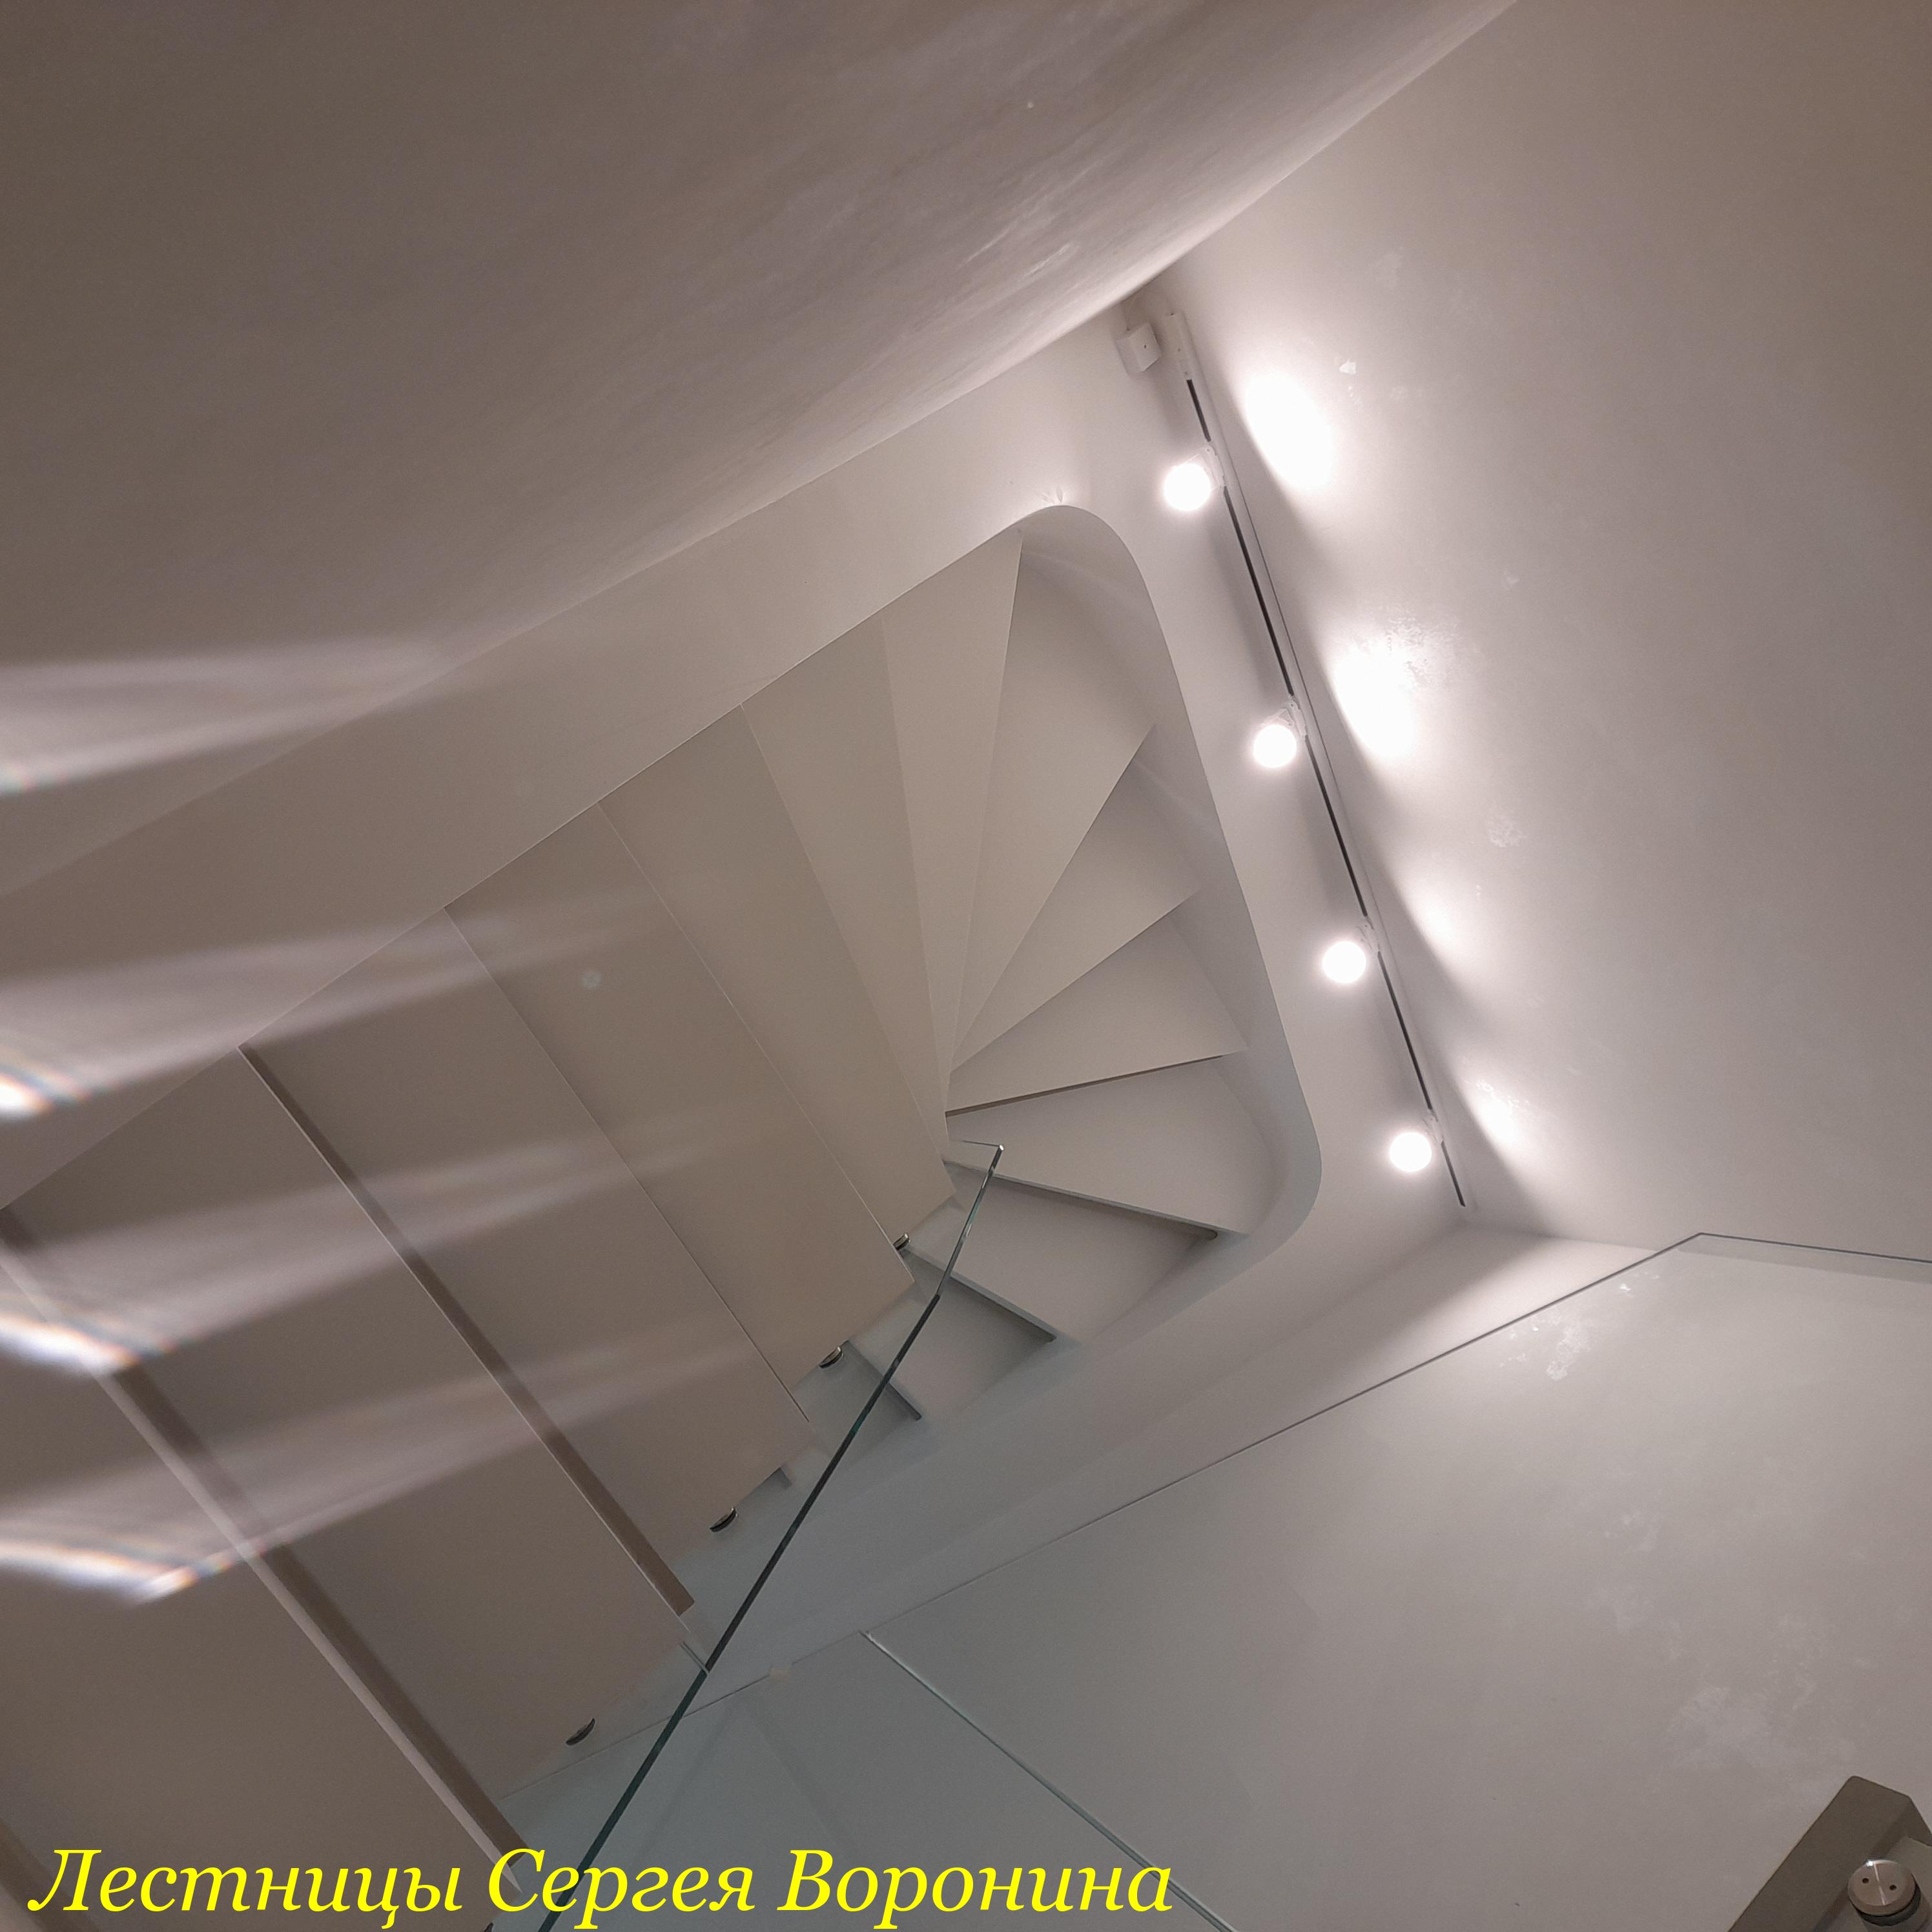 Межэтажные Лестницы Сергея Воронина, Воронеж - Марина